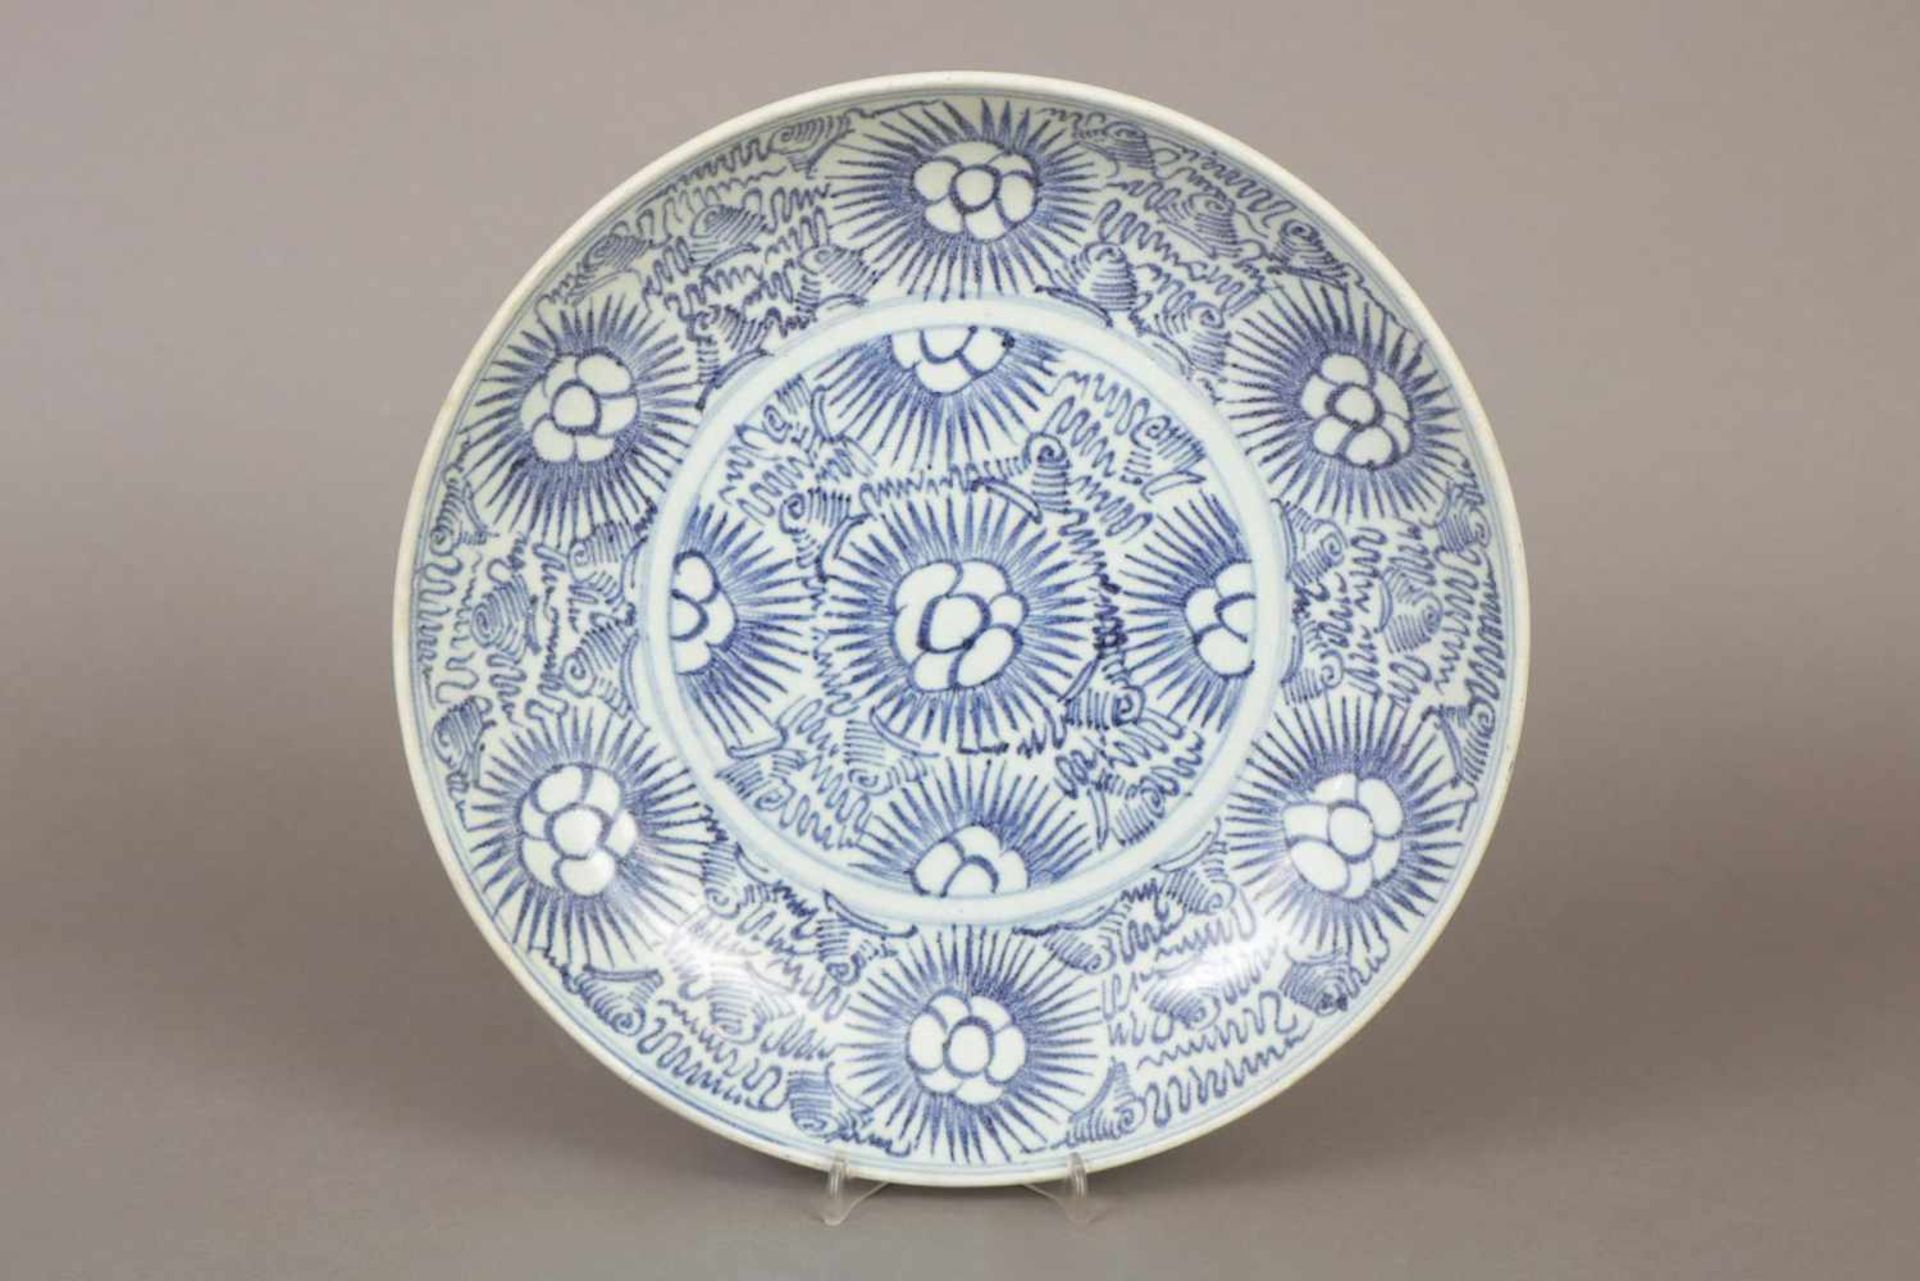 Chinesischer TellerPorzellan, Qing Dynastie (1644-1912, hier um 1810), blaues, stilisiertes